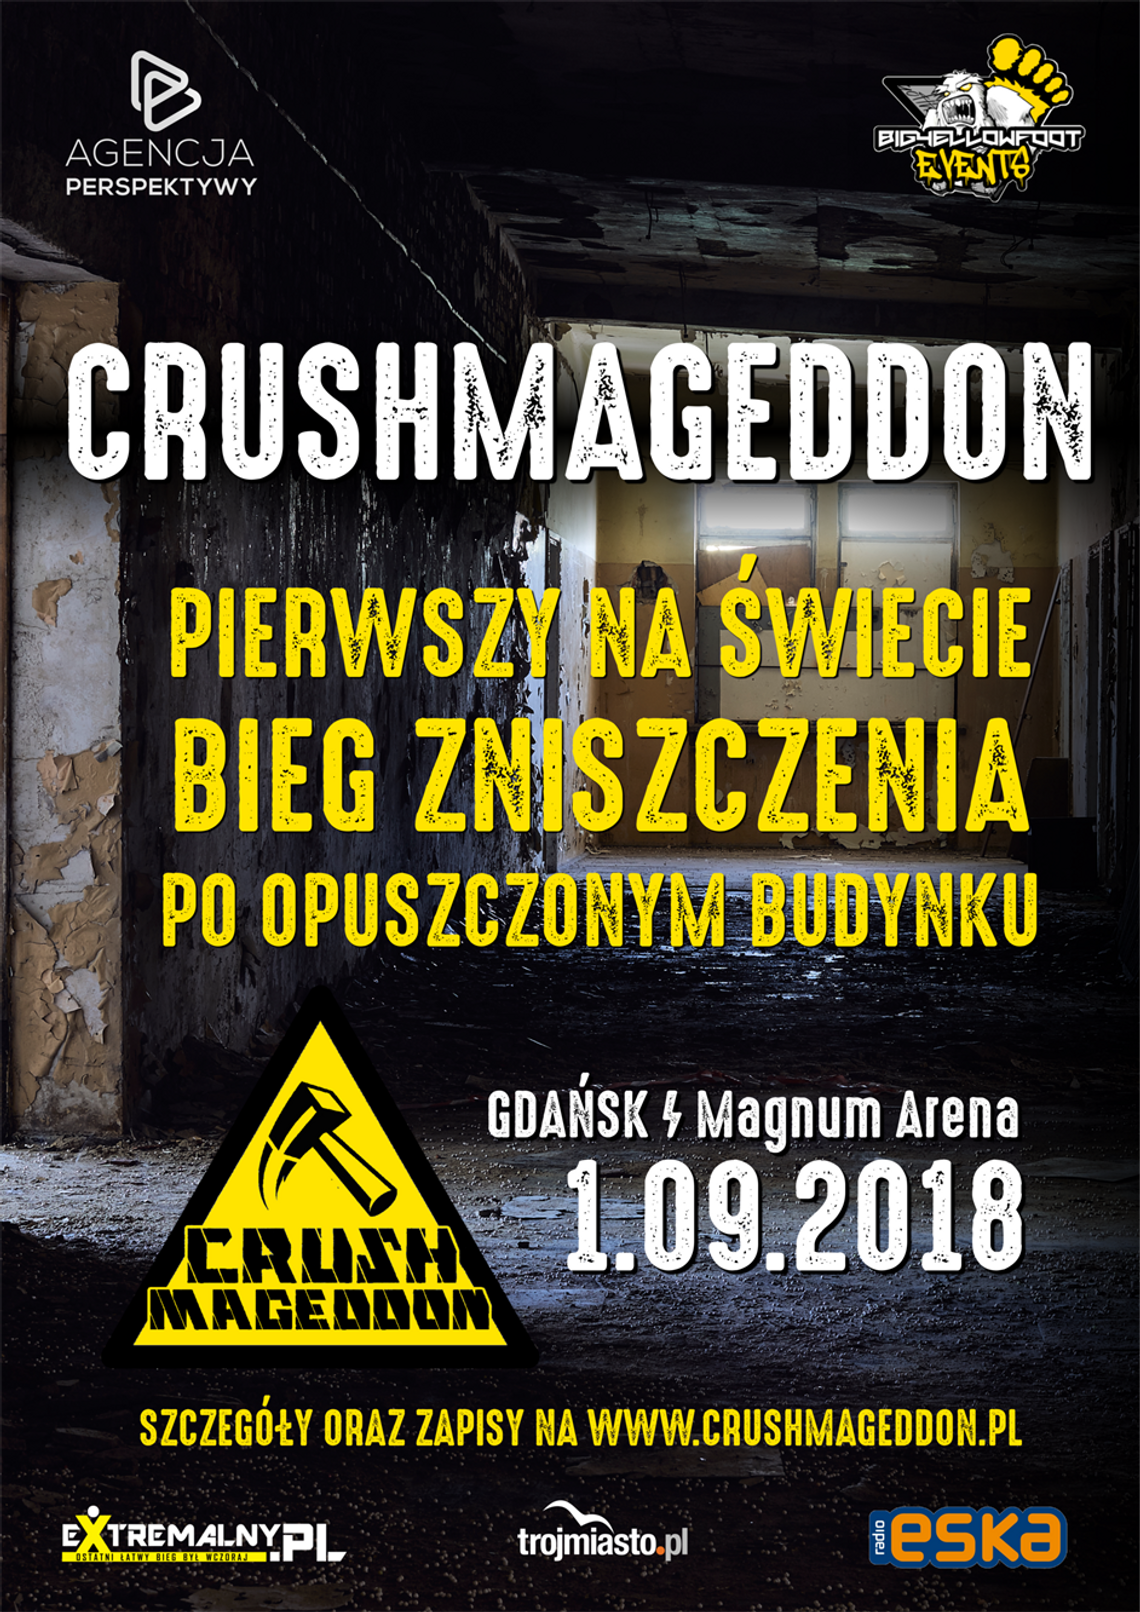 Crushmageddon 2018 